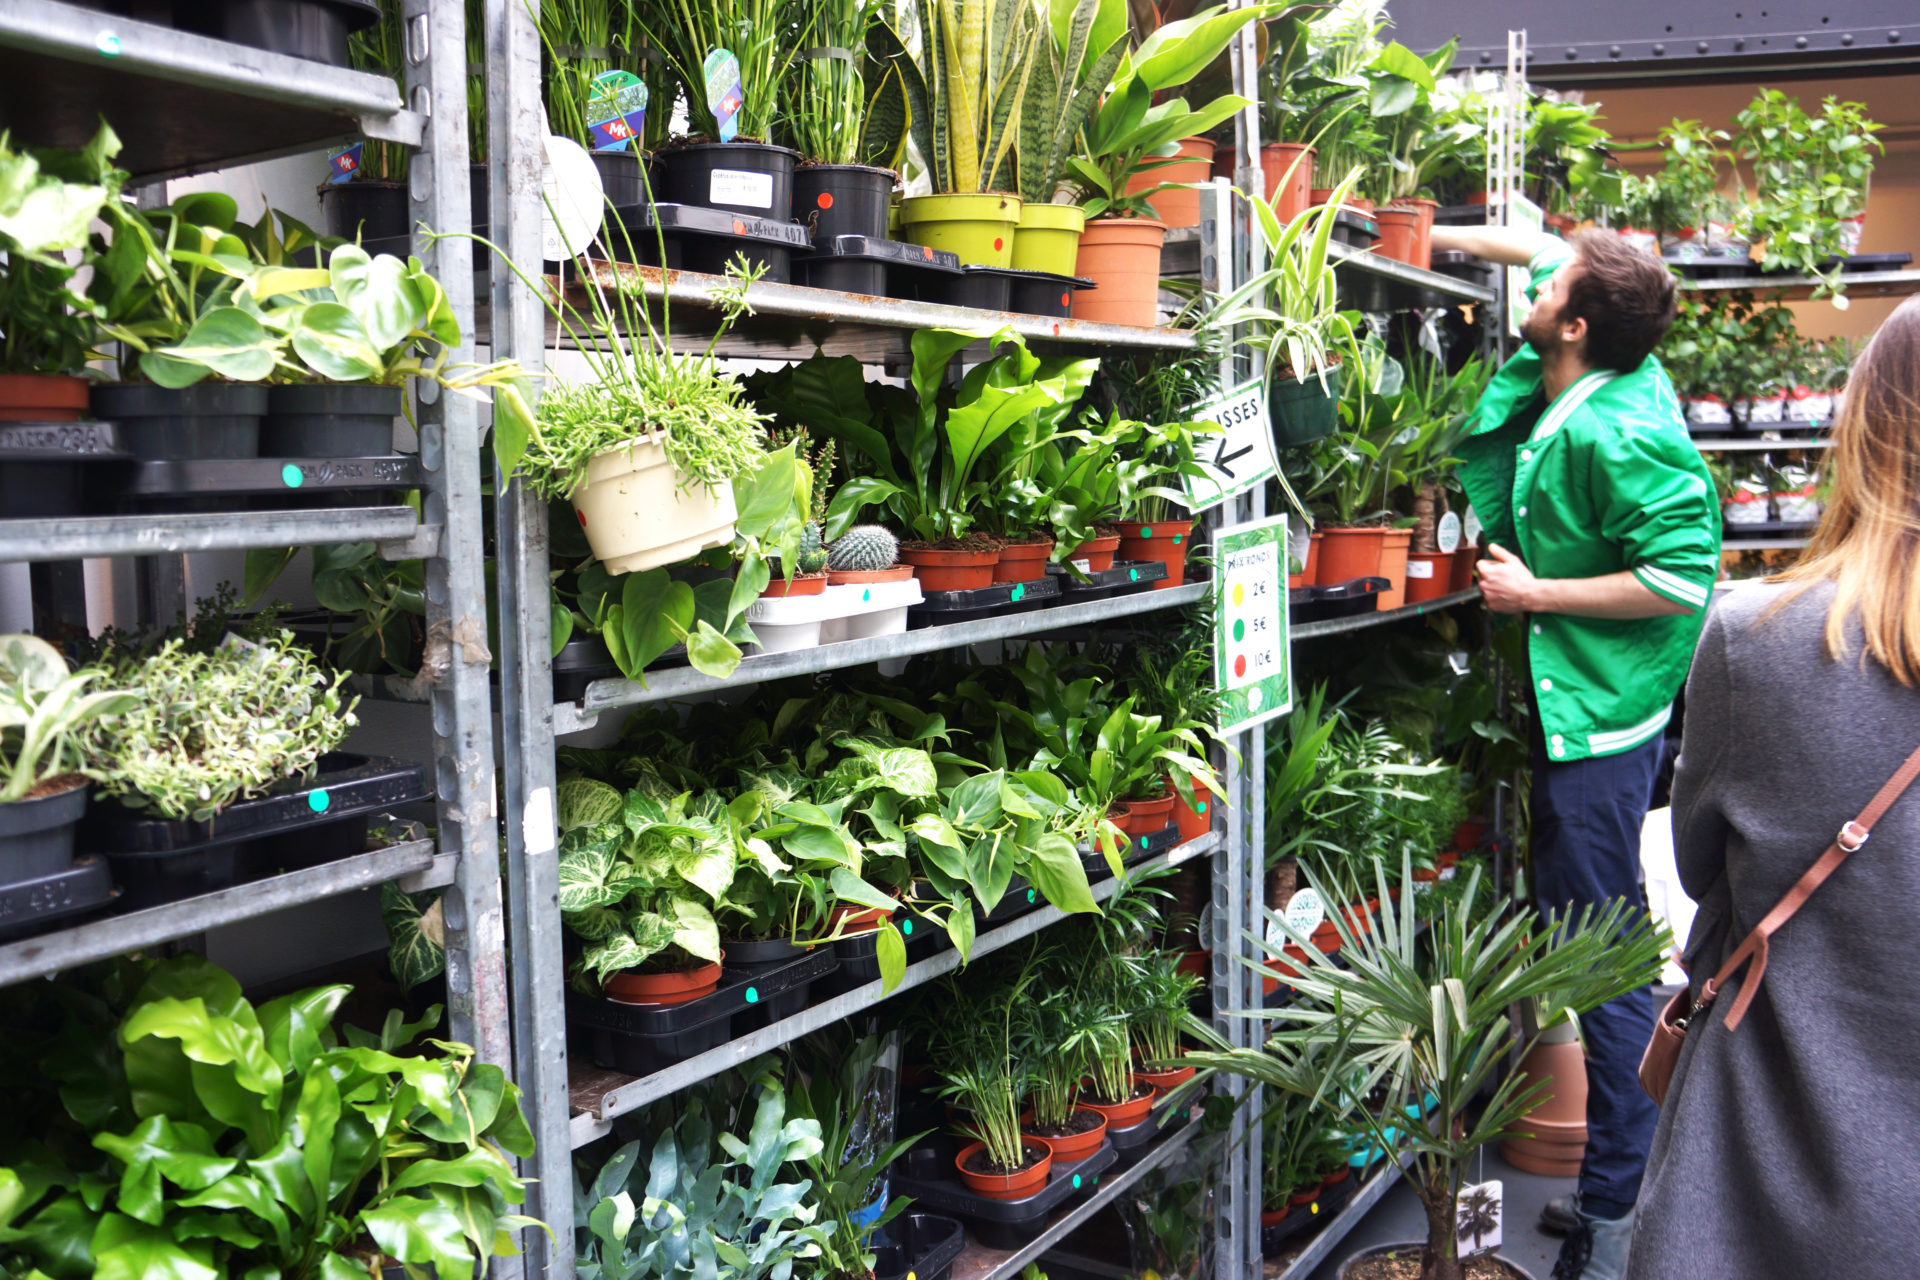 Koop goedkope planten voor een groen interieur in BRUSSEL!